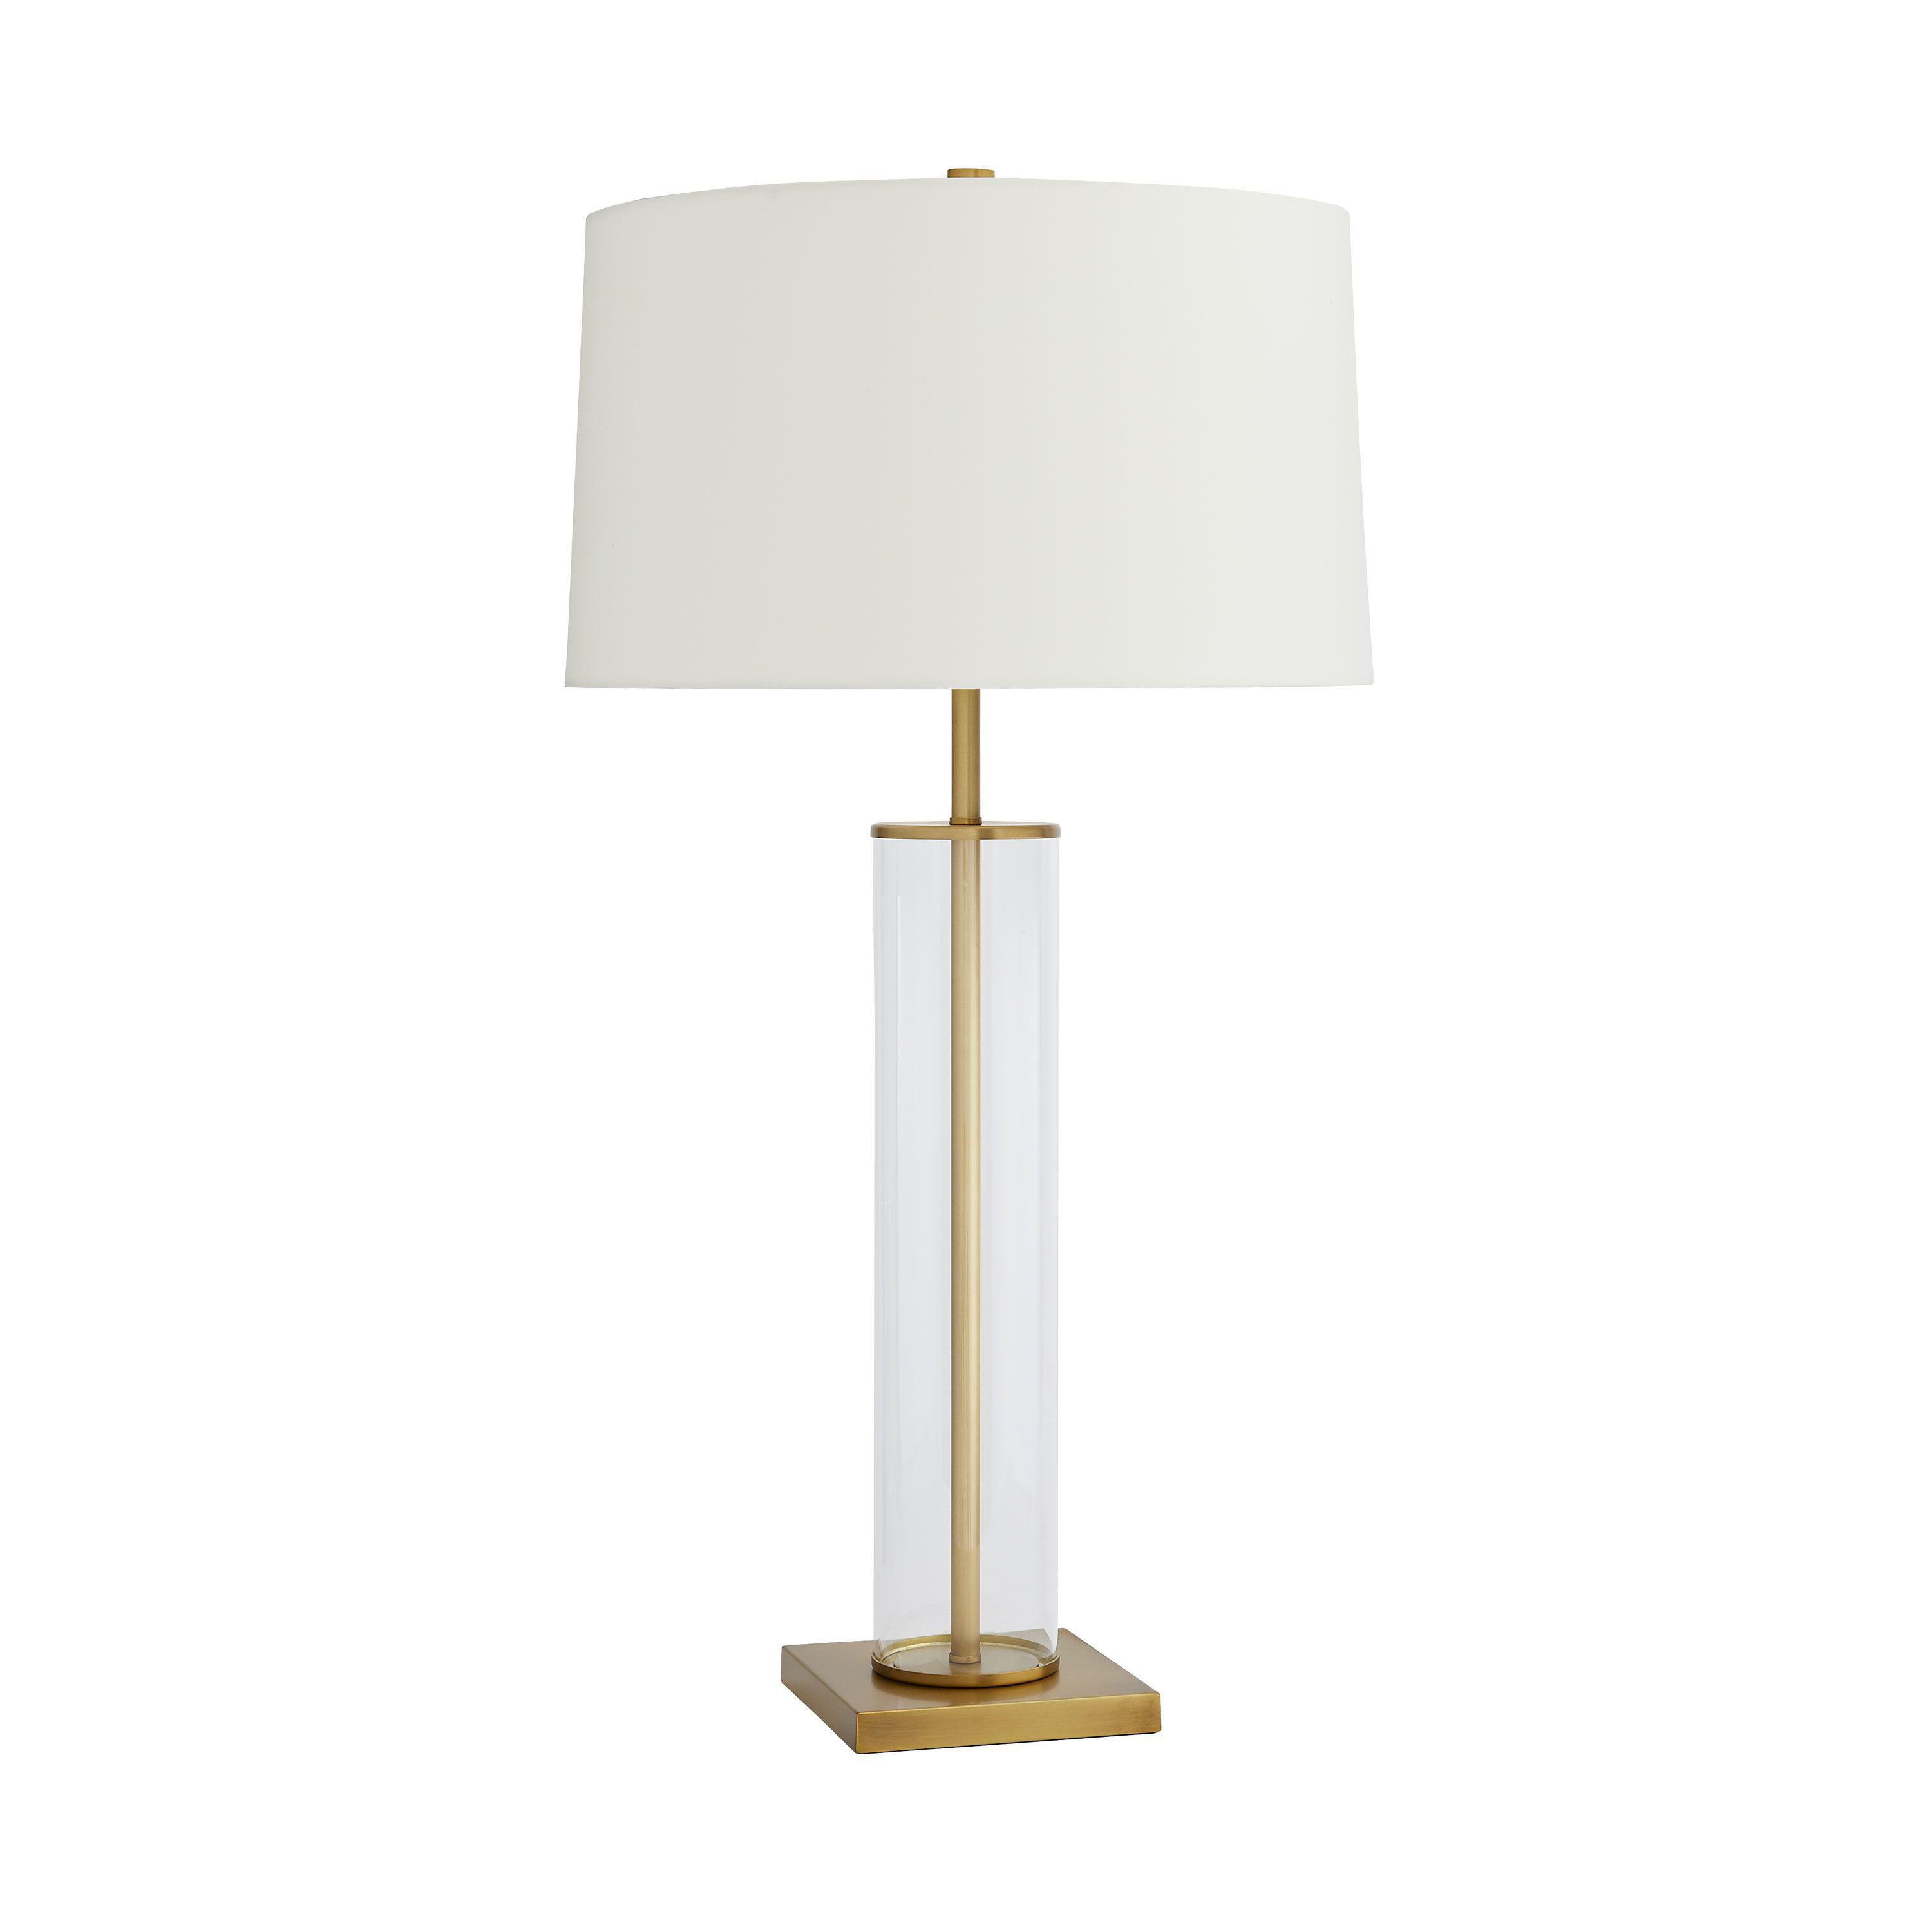 Купить Настольная лампа Norman Lamp в интернет-магазине roooms.ru